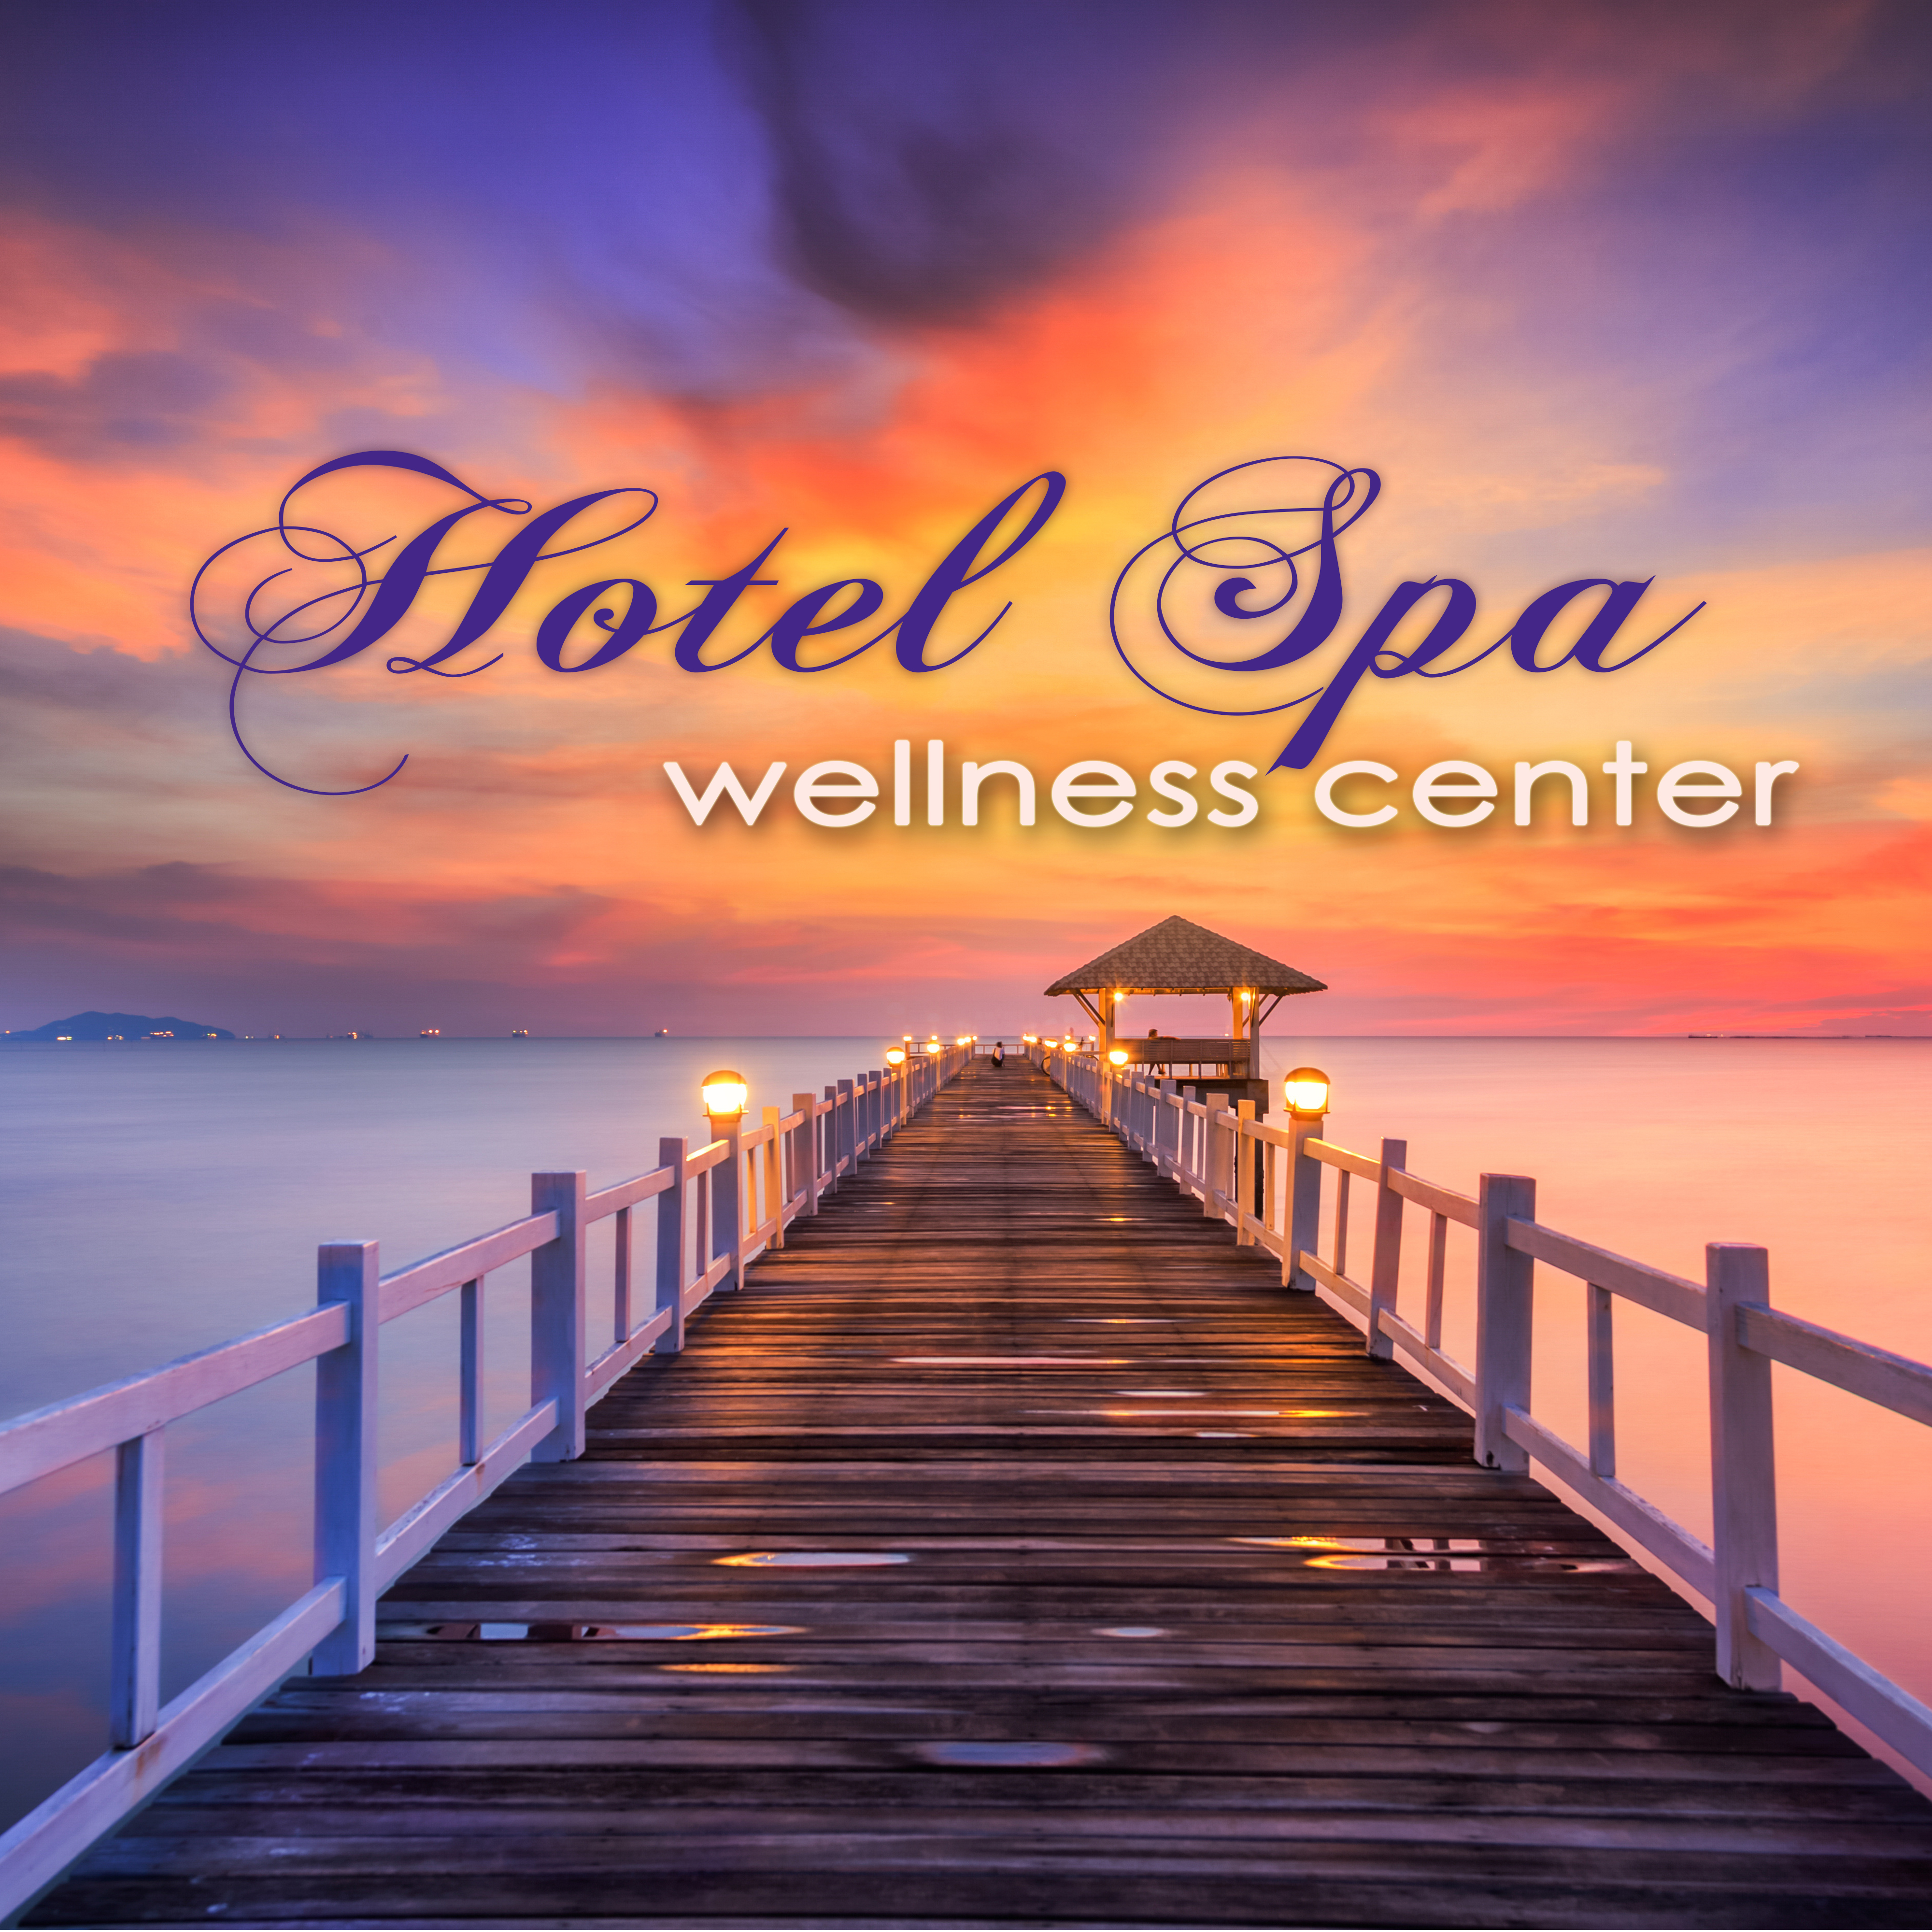 Hotel Spa Wellness Center  Ultimate Soothing Relaxing Sounds for Spas, Hammam, Sauna  Wellness Center Massage